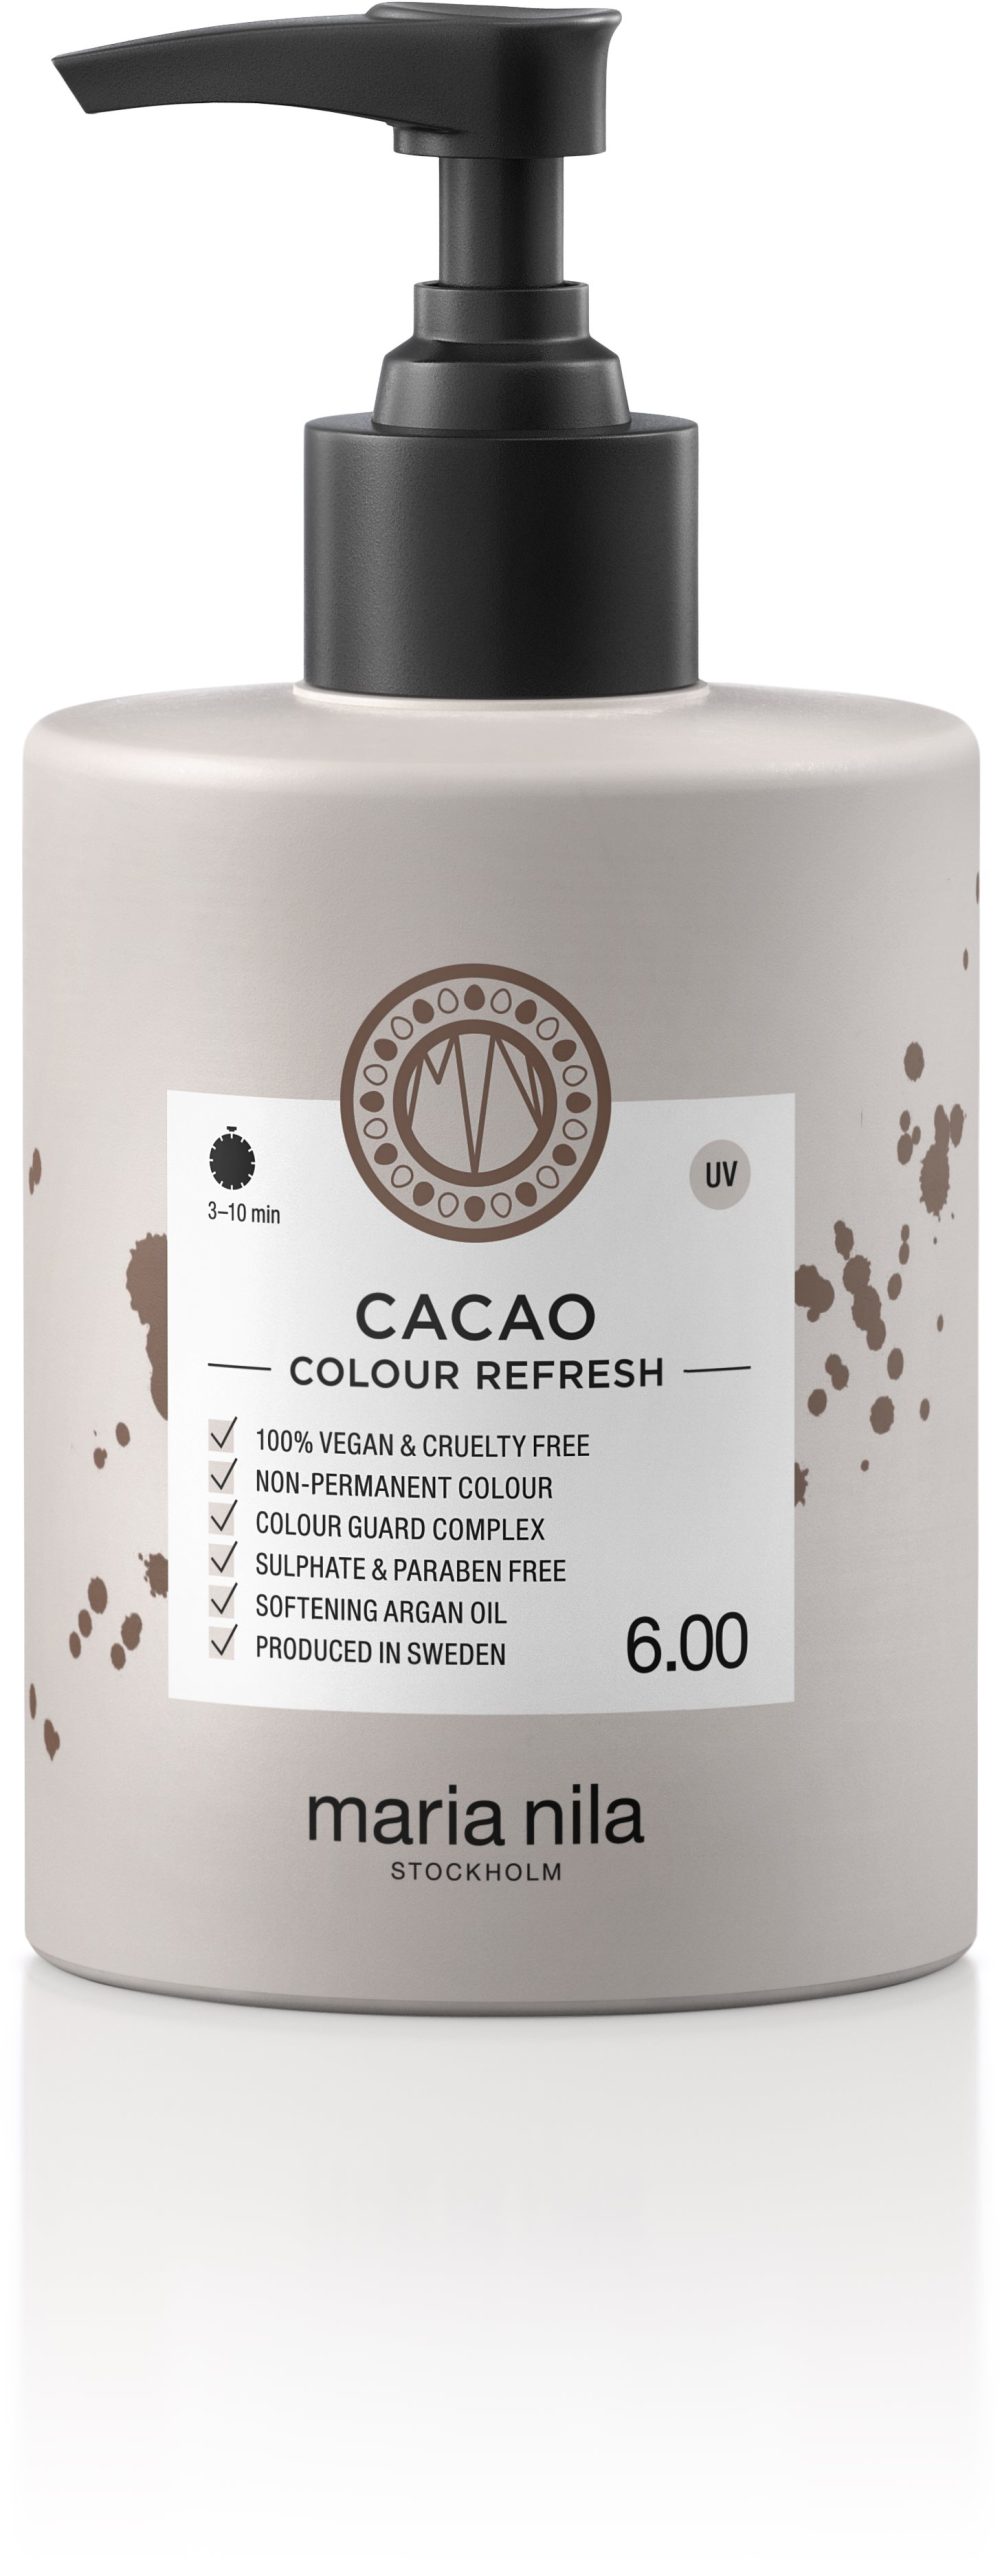 Természetes hajfesték MARIA NILA Colour Refresh Cacao 6.00 (300 ml)